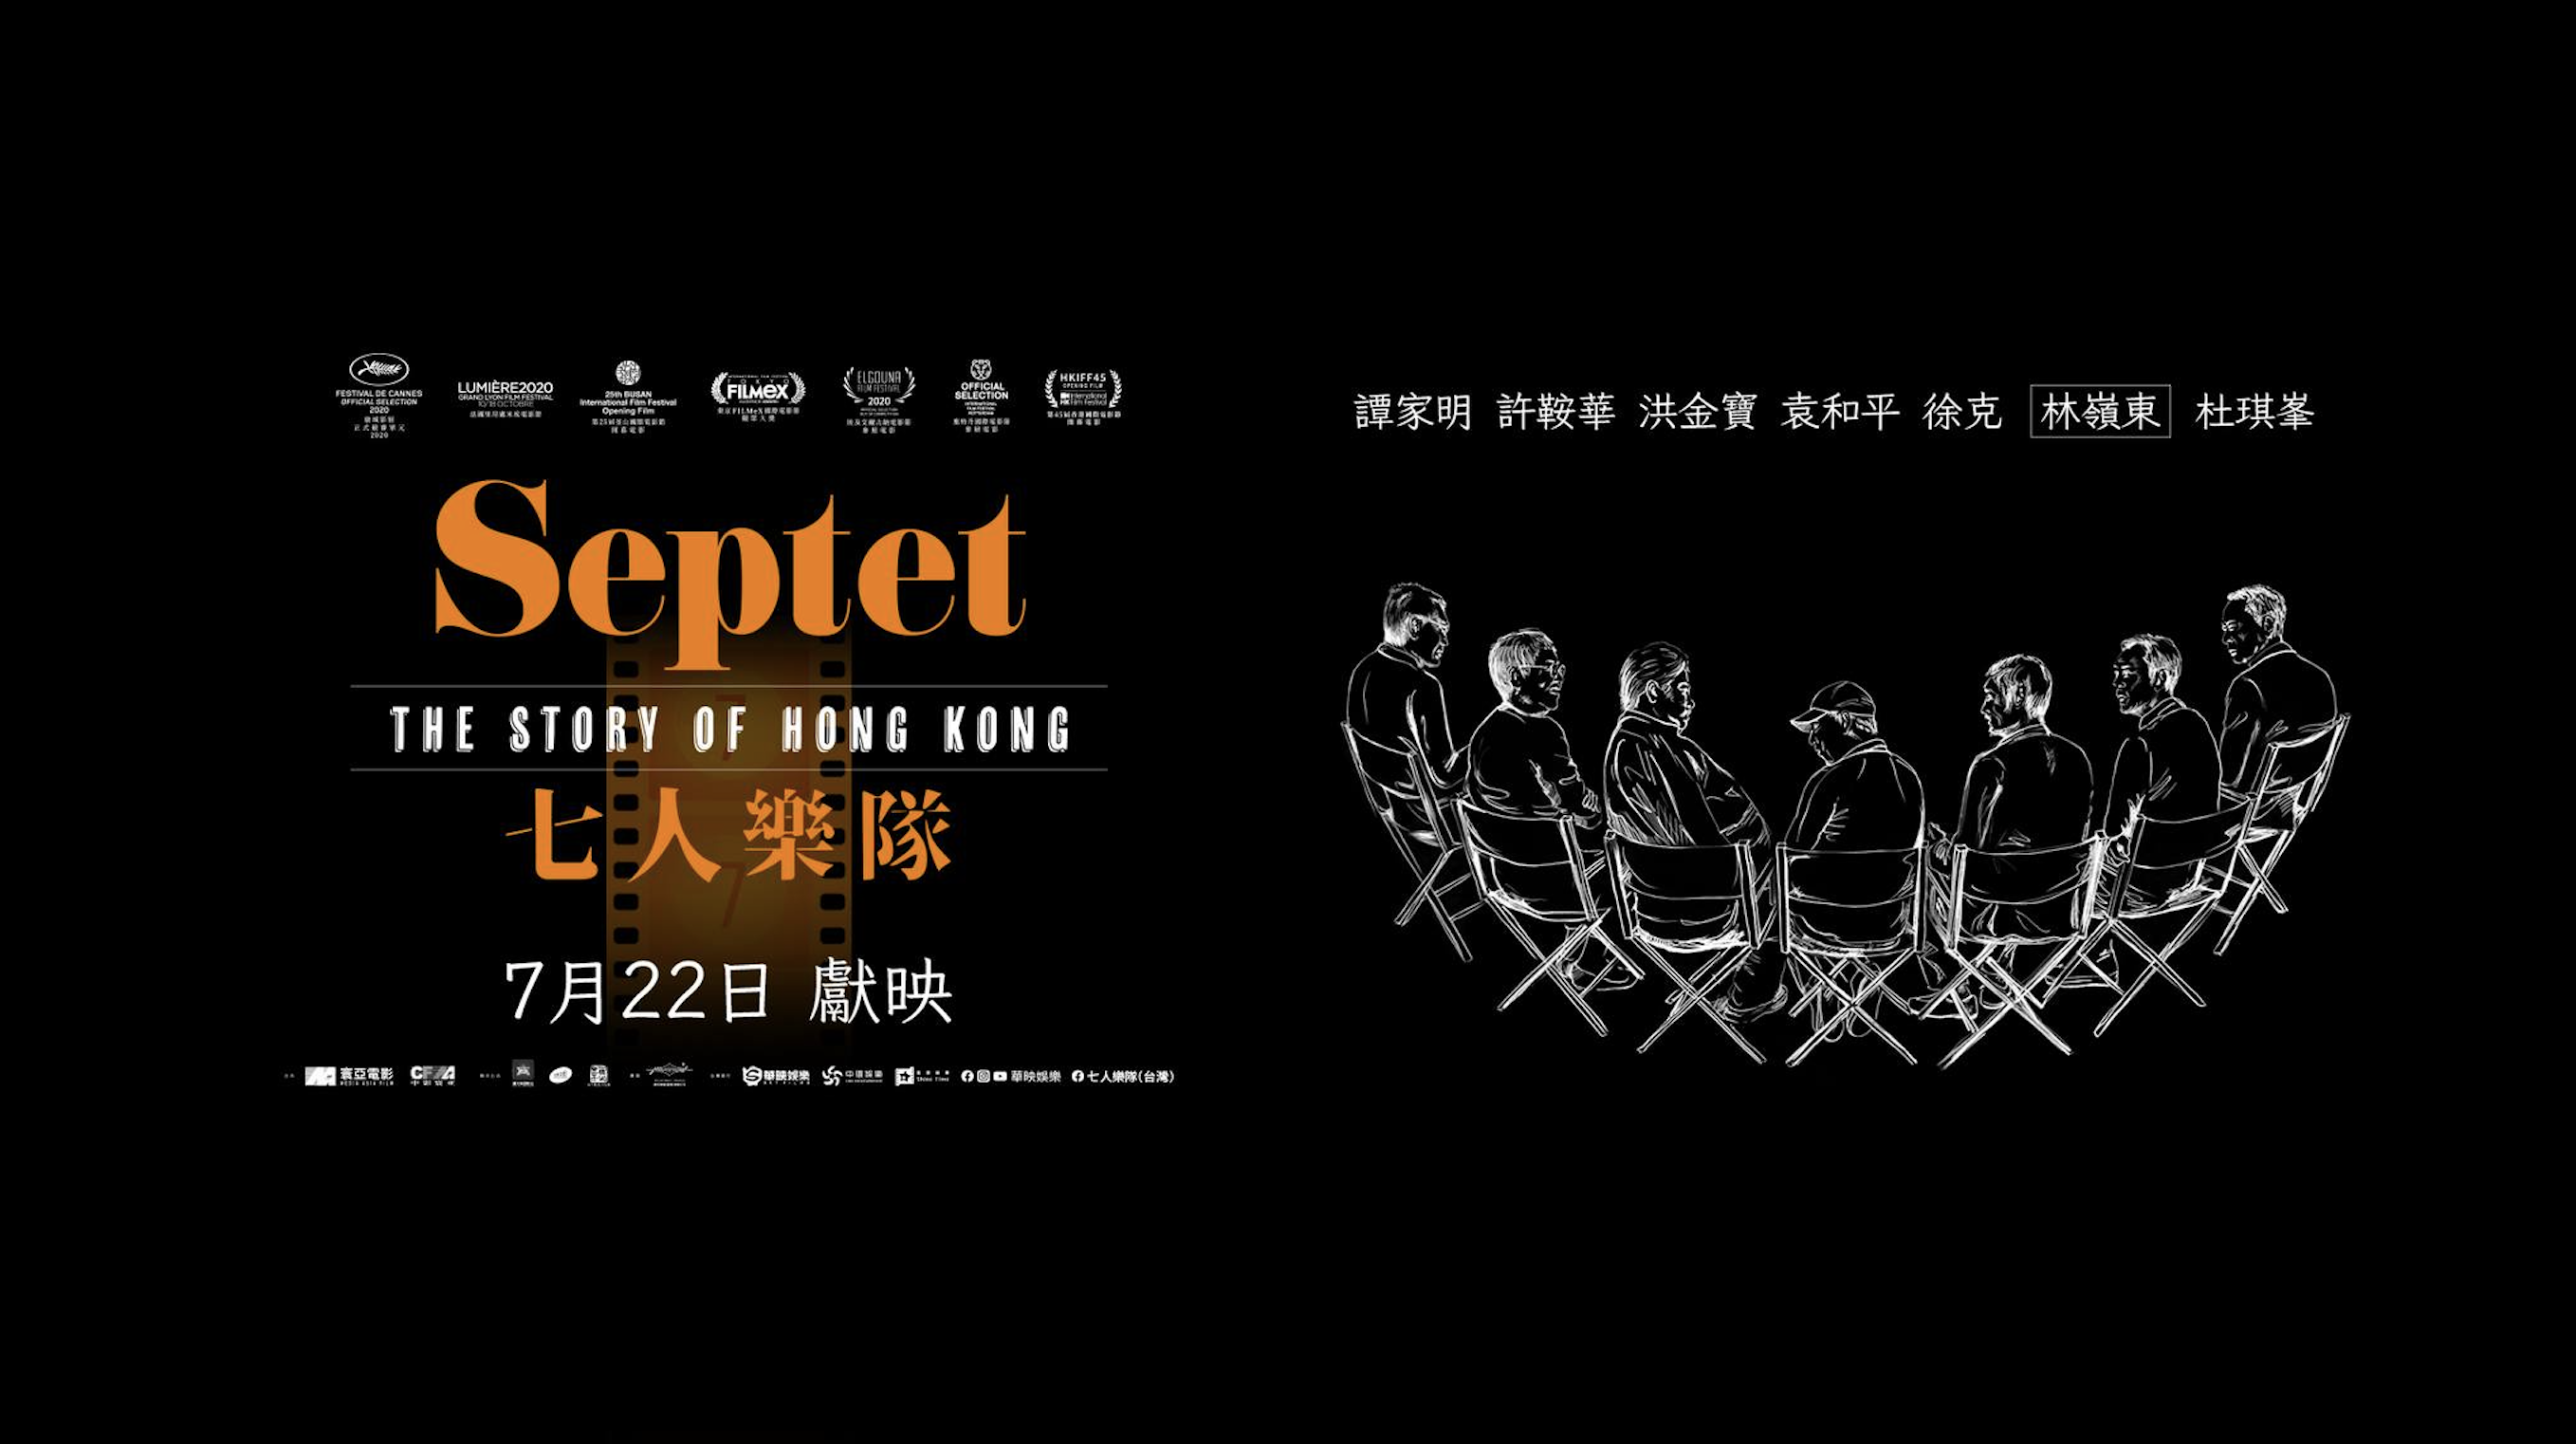 (華映娛樂)香港七大導演聯手合作《七人樂隊 Septet: The Story of Hong Kong 》七個濃厚香港情懷短篇故事 各有寓意 封面照片